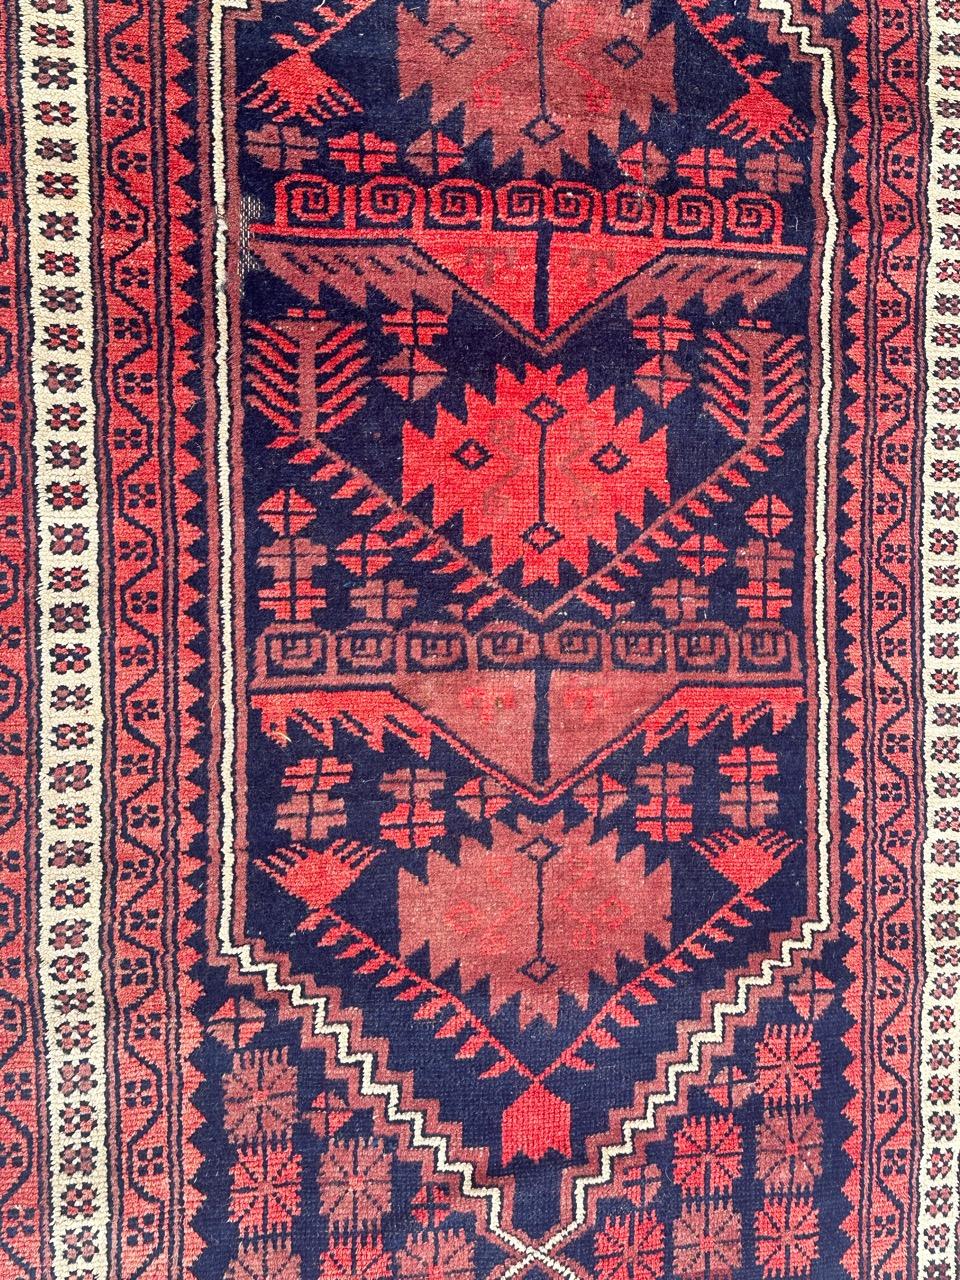 Hübscher türkischer Vintage-Teppich mit schönem geometrischem Muster und schönen Farben in Rot, Blau, Lila und Weiß, komplett handgeknüpft mit Wolle auf Wollfond 
Geringe Abnutzung!

✨✨✨
